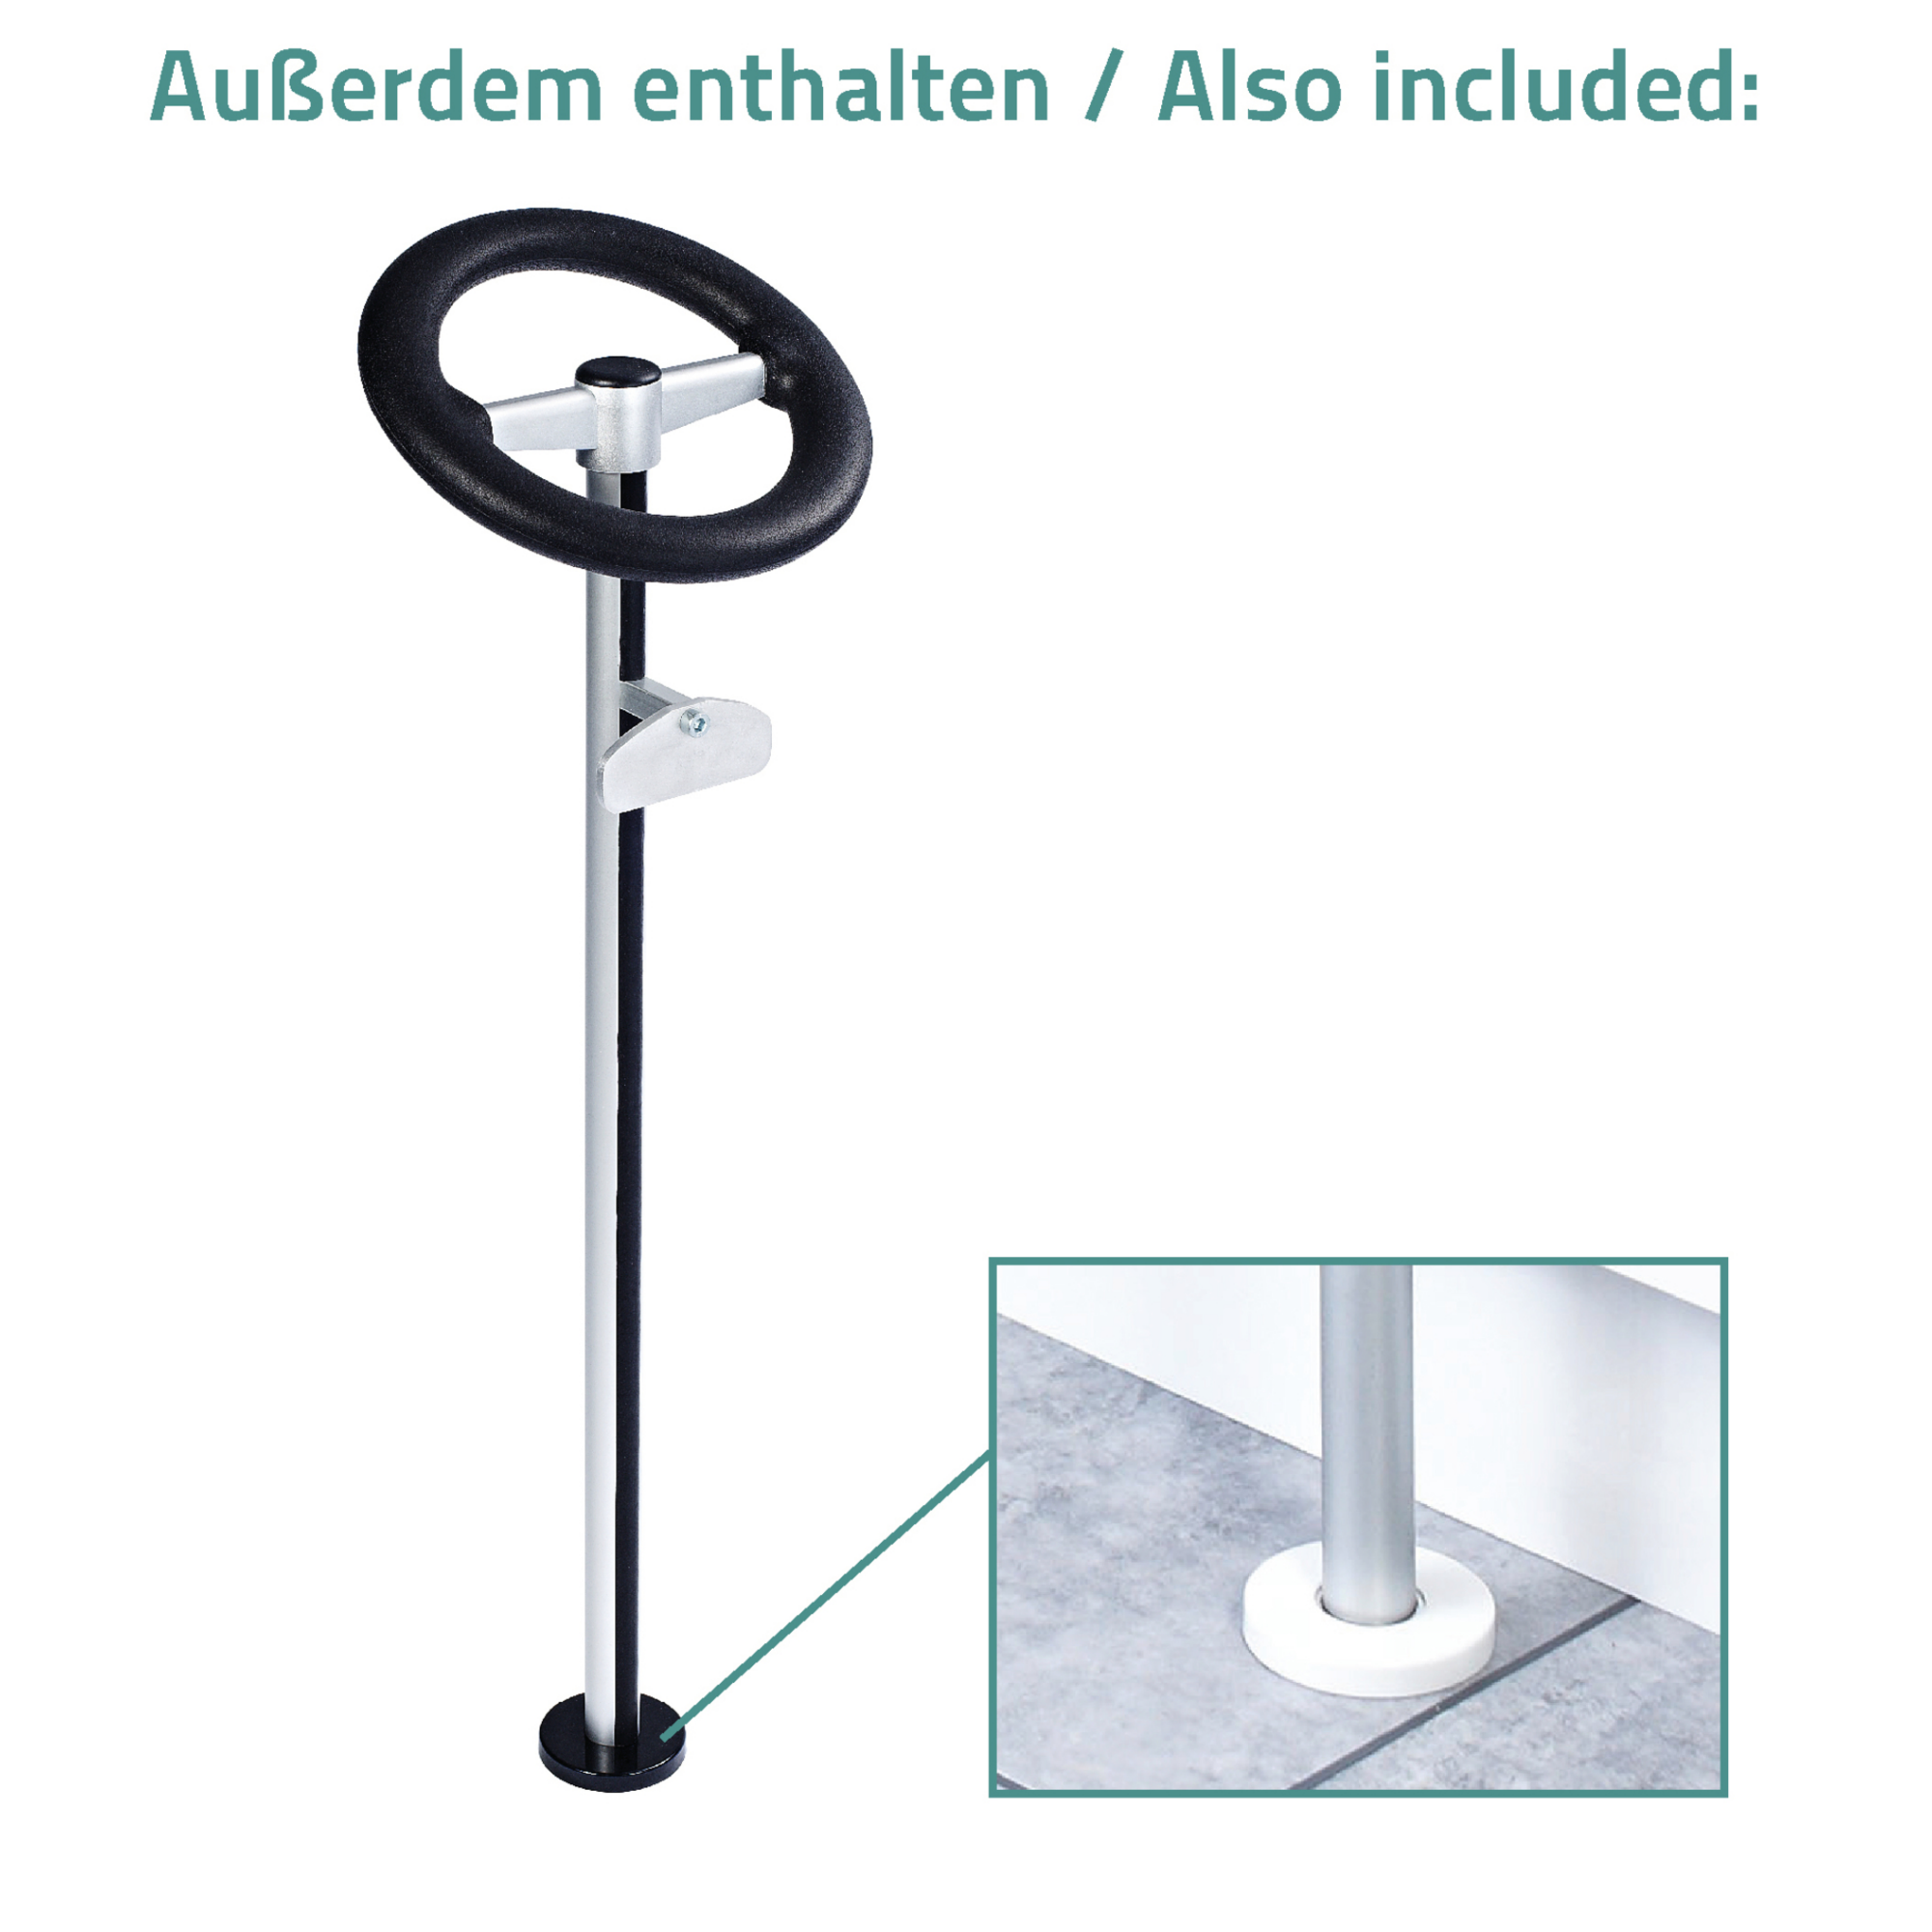 Badewannen-Einstiegshilfe 'Premium' schwarz, 81 cm, bis 150 kg + product picture